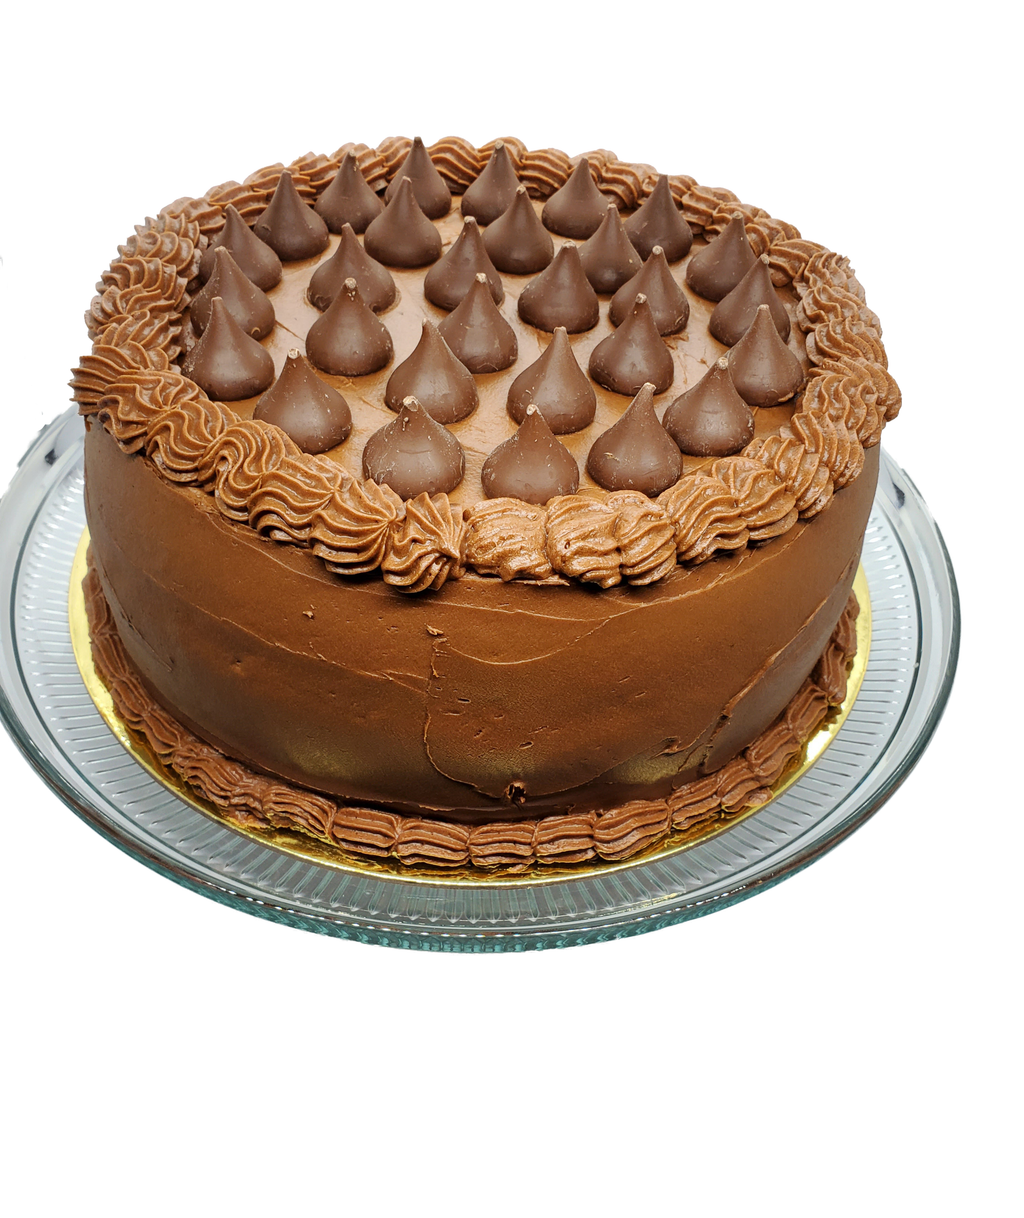 9 inch Hershey's Chocolate Cake